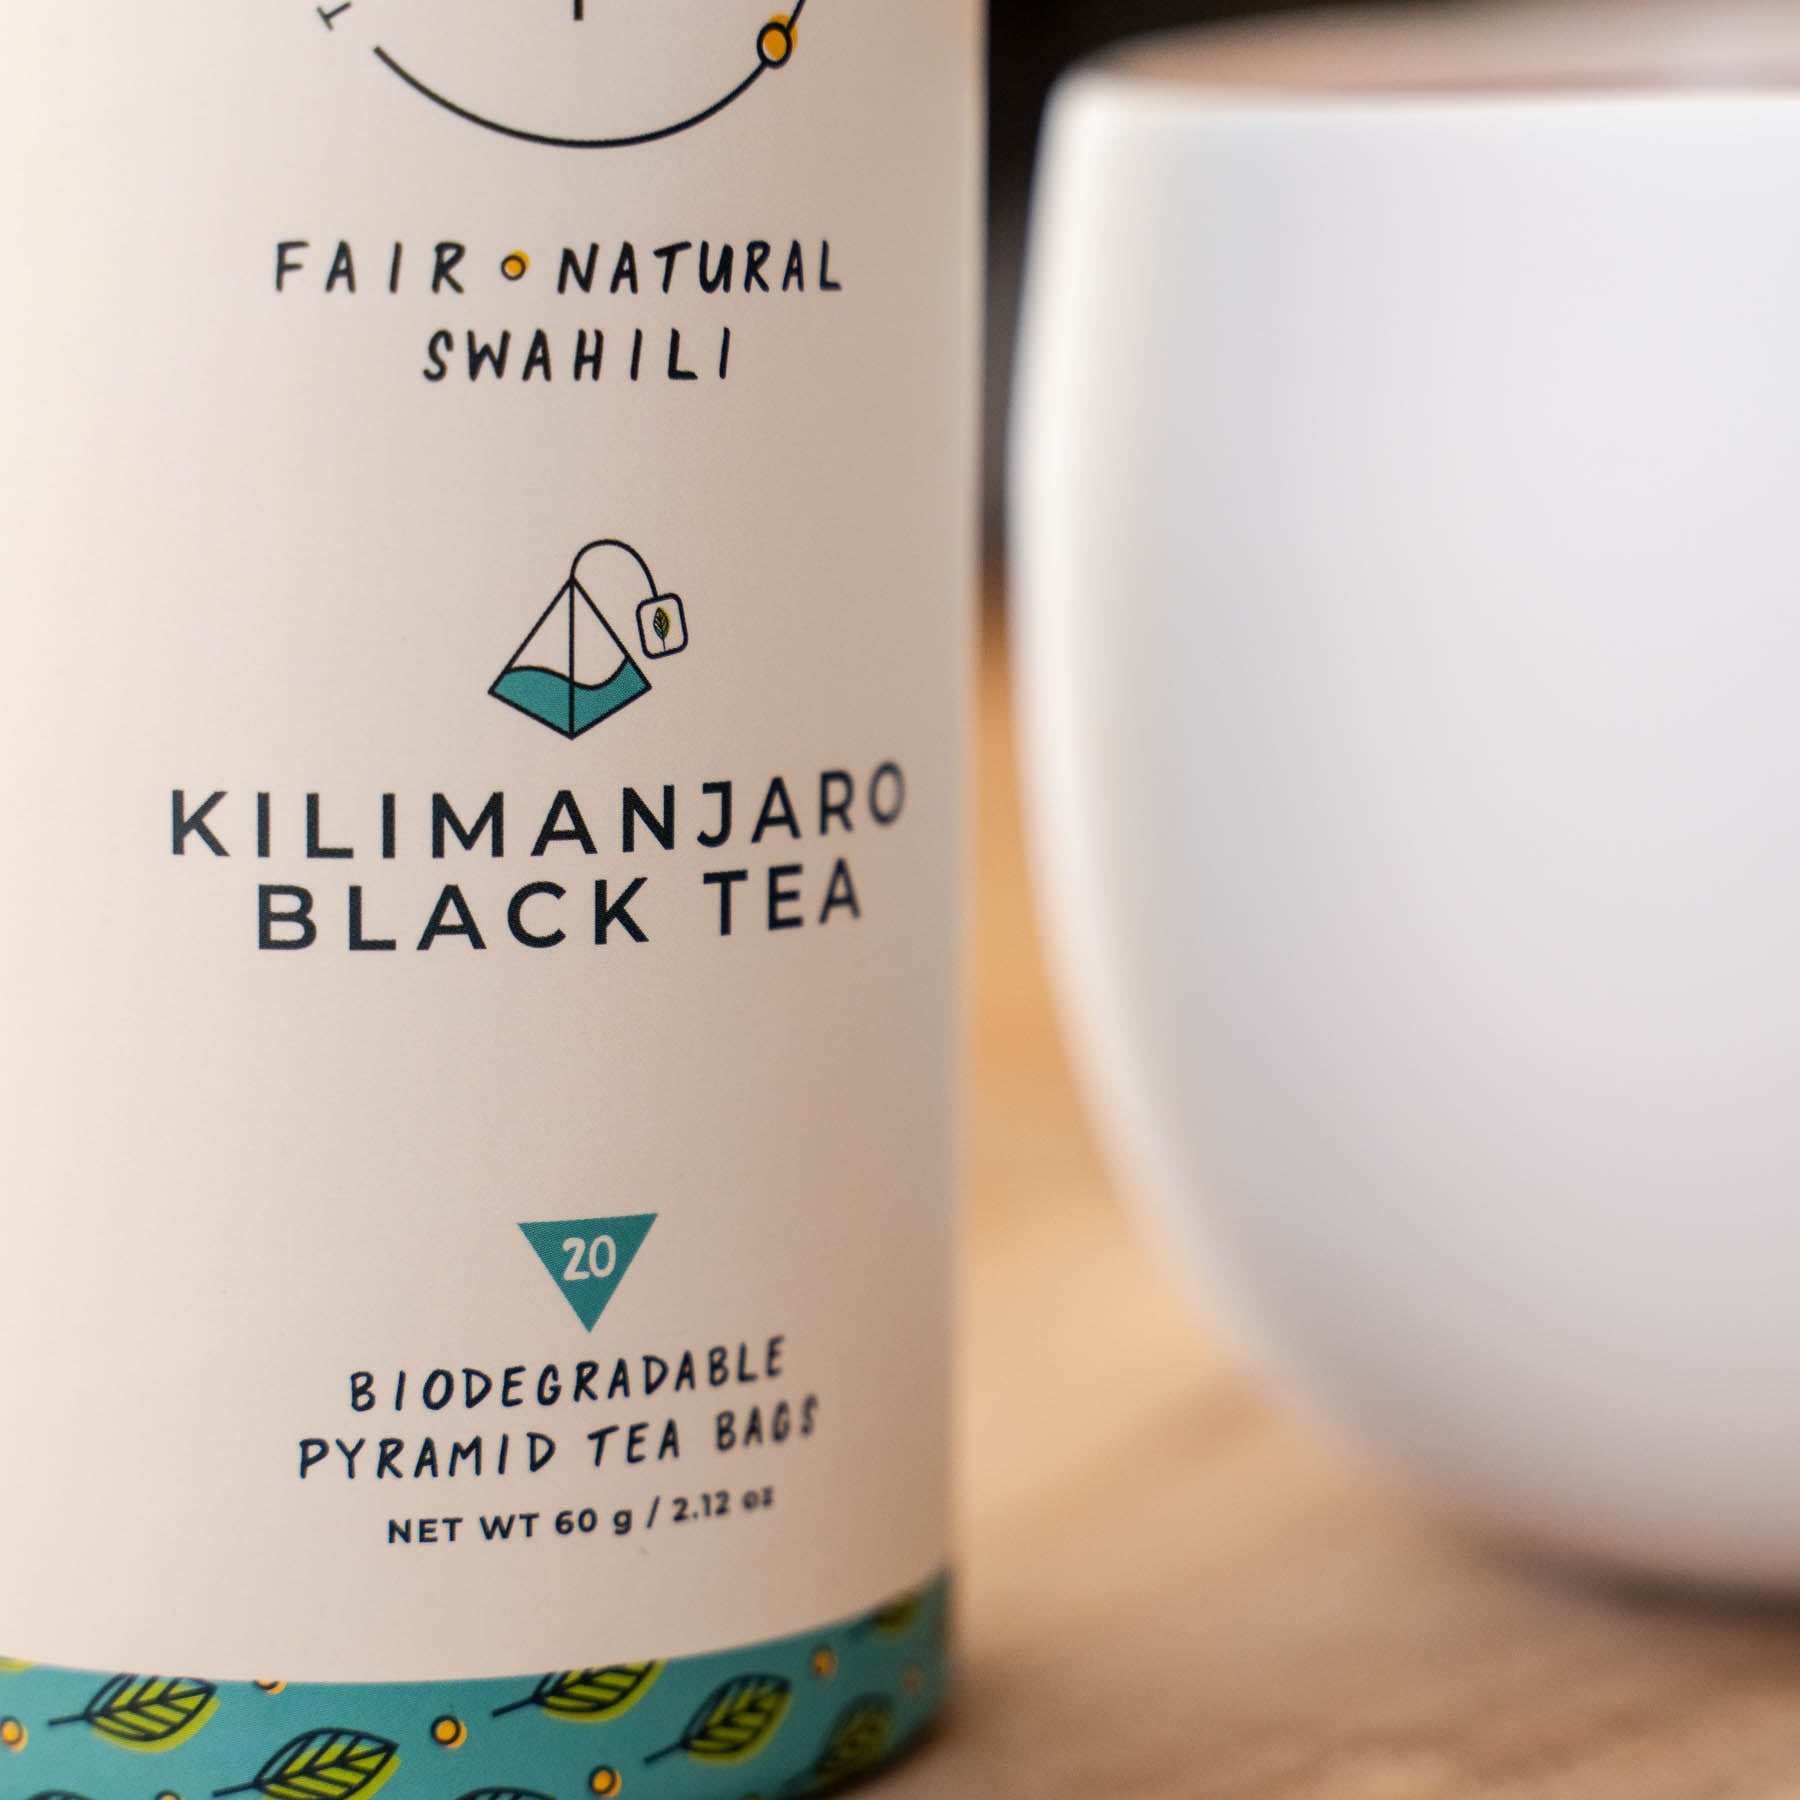 Kilimanjaro Black Tea